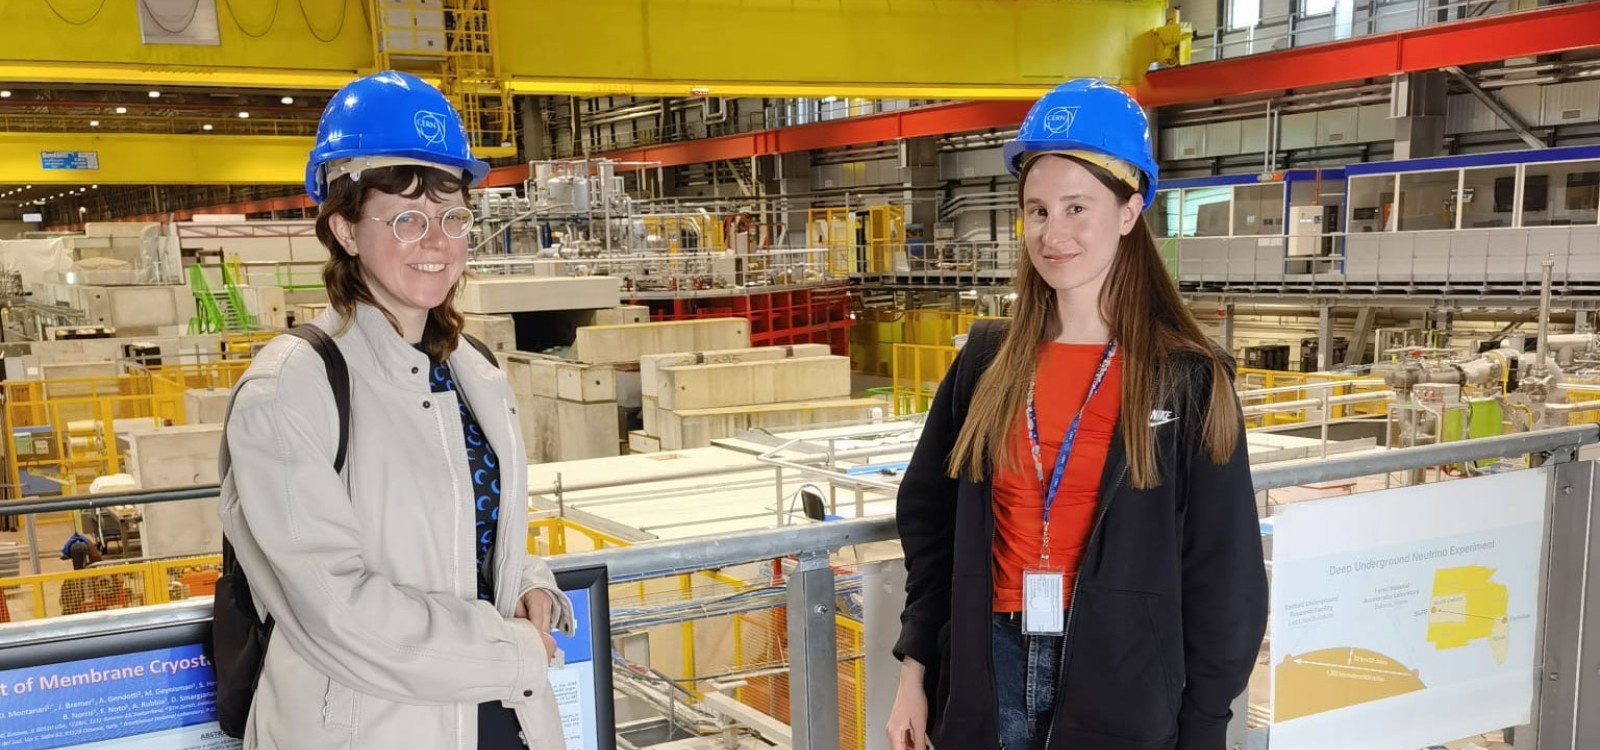 Dorota Gawęda and Eglė Kulbokaitė at the CERN Neutrino Platform.